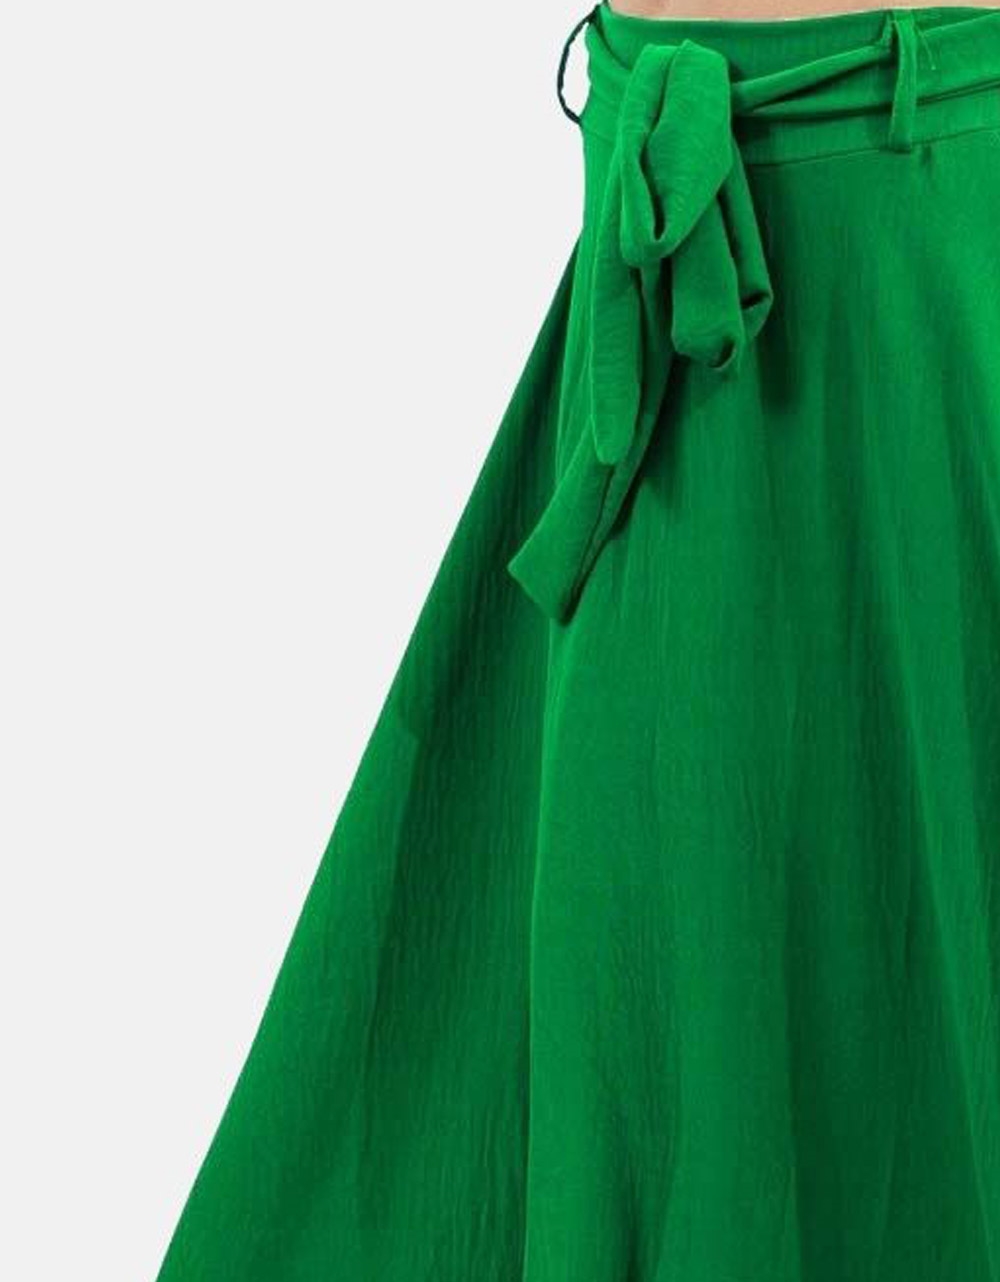 Εικόνα από Maxi φούστα με ζωνάκι Πράσινο